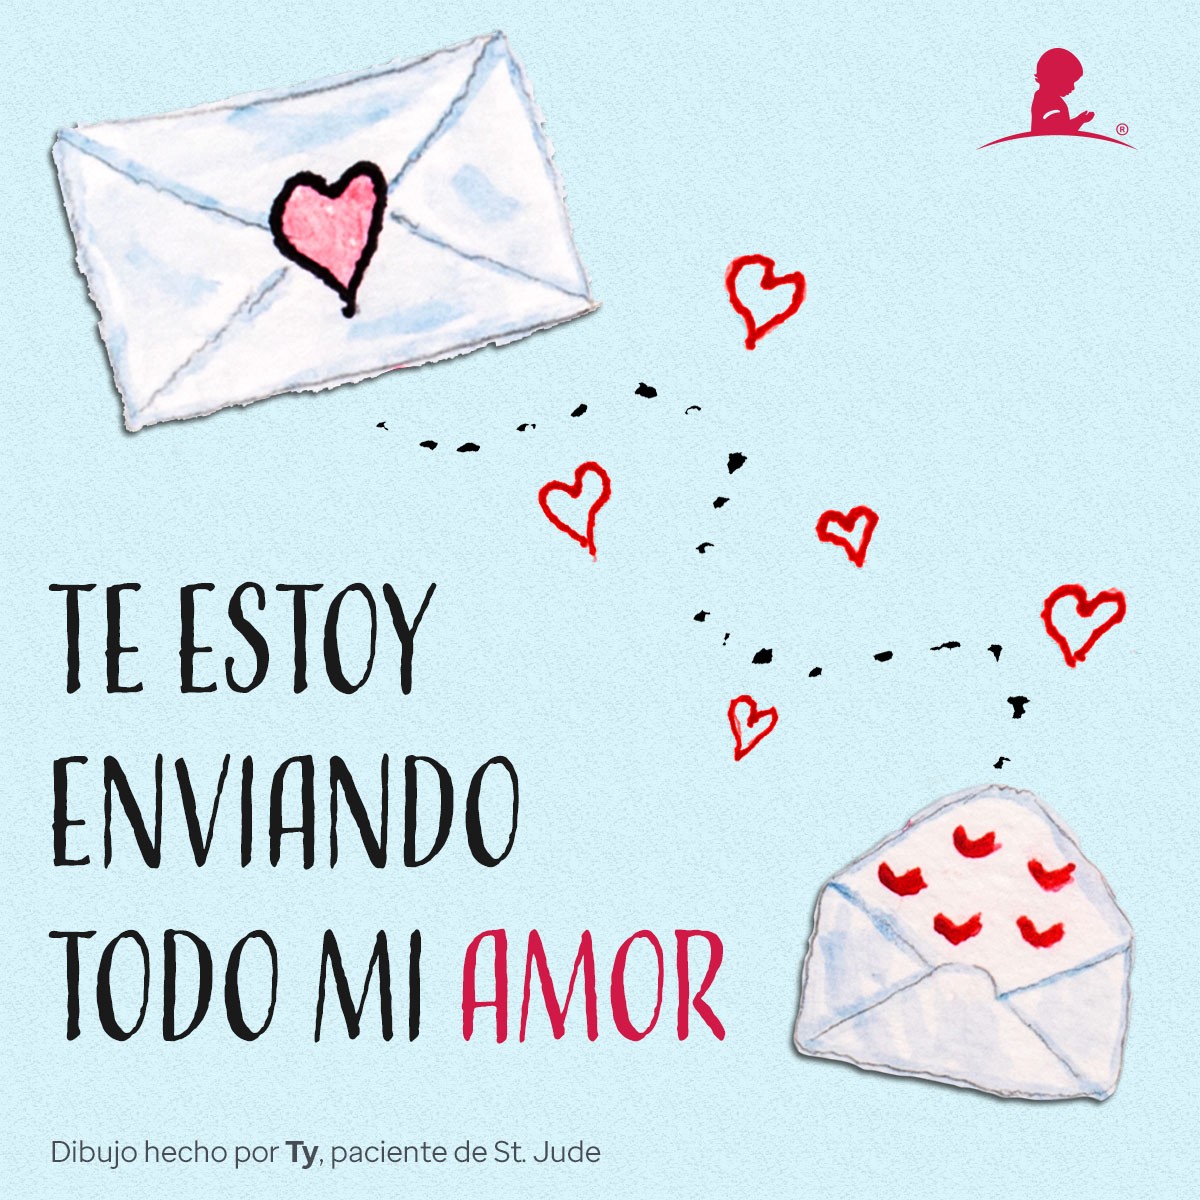 Tarjeta celebratoria del día de San Valentín con imágenes de cartas con corazones que lee “Te estoy enviando todo mi amor”